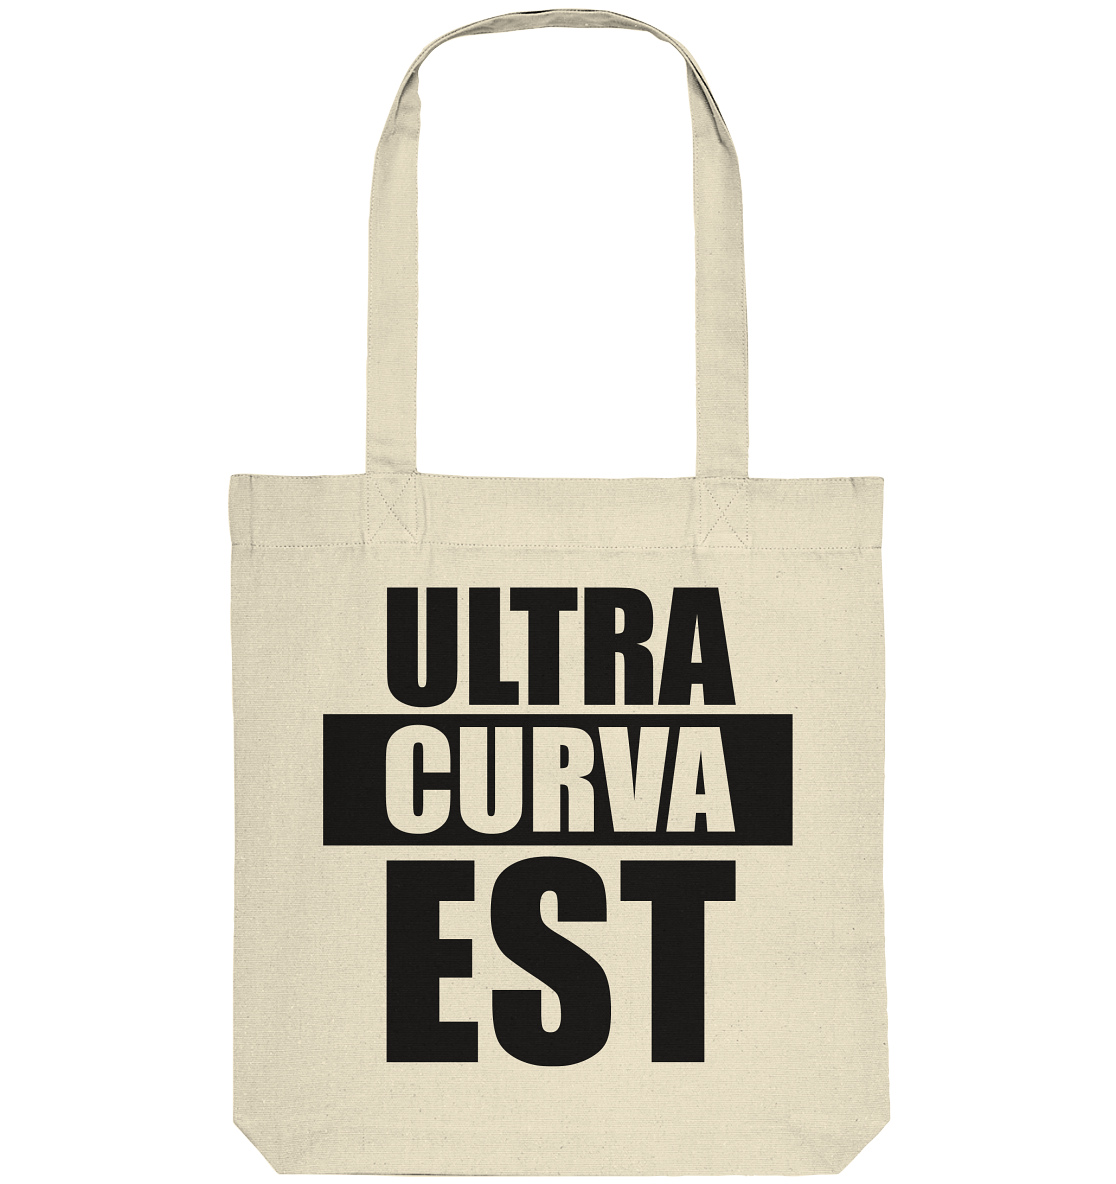 N.O.S.W. BLOCK FUltras Tote-Bag "ULTRAS CURVA EST" Organic Baumwolltasche natural